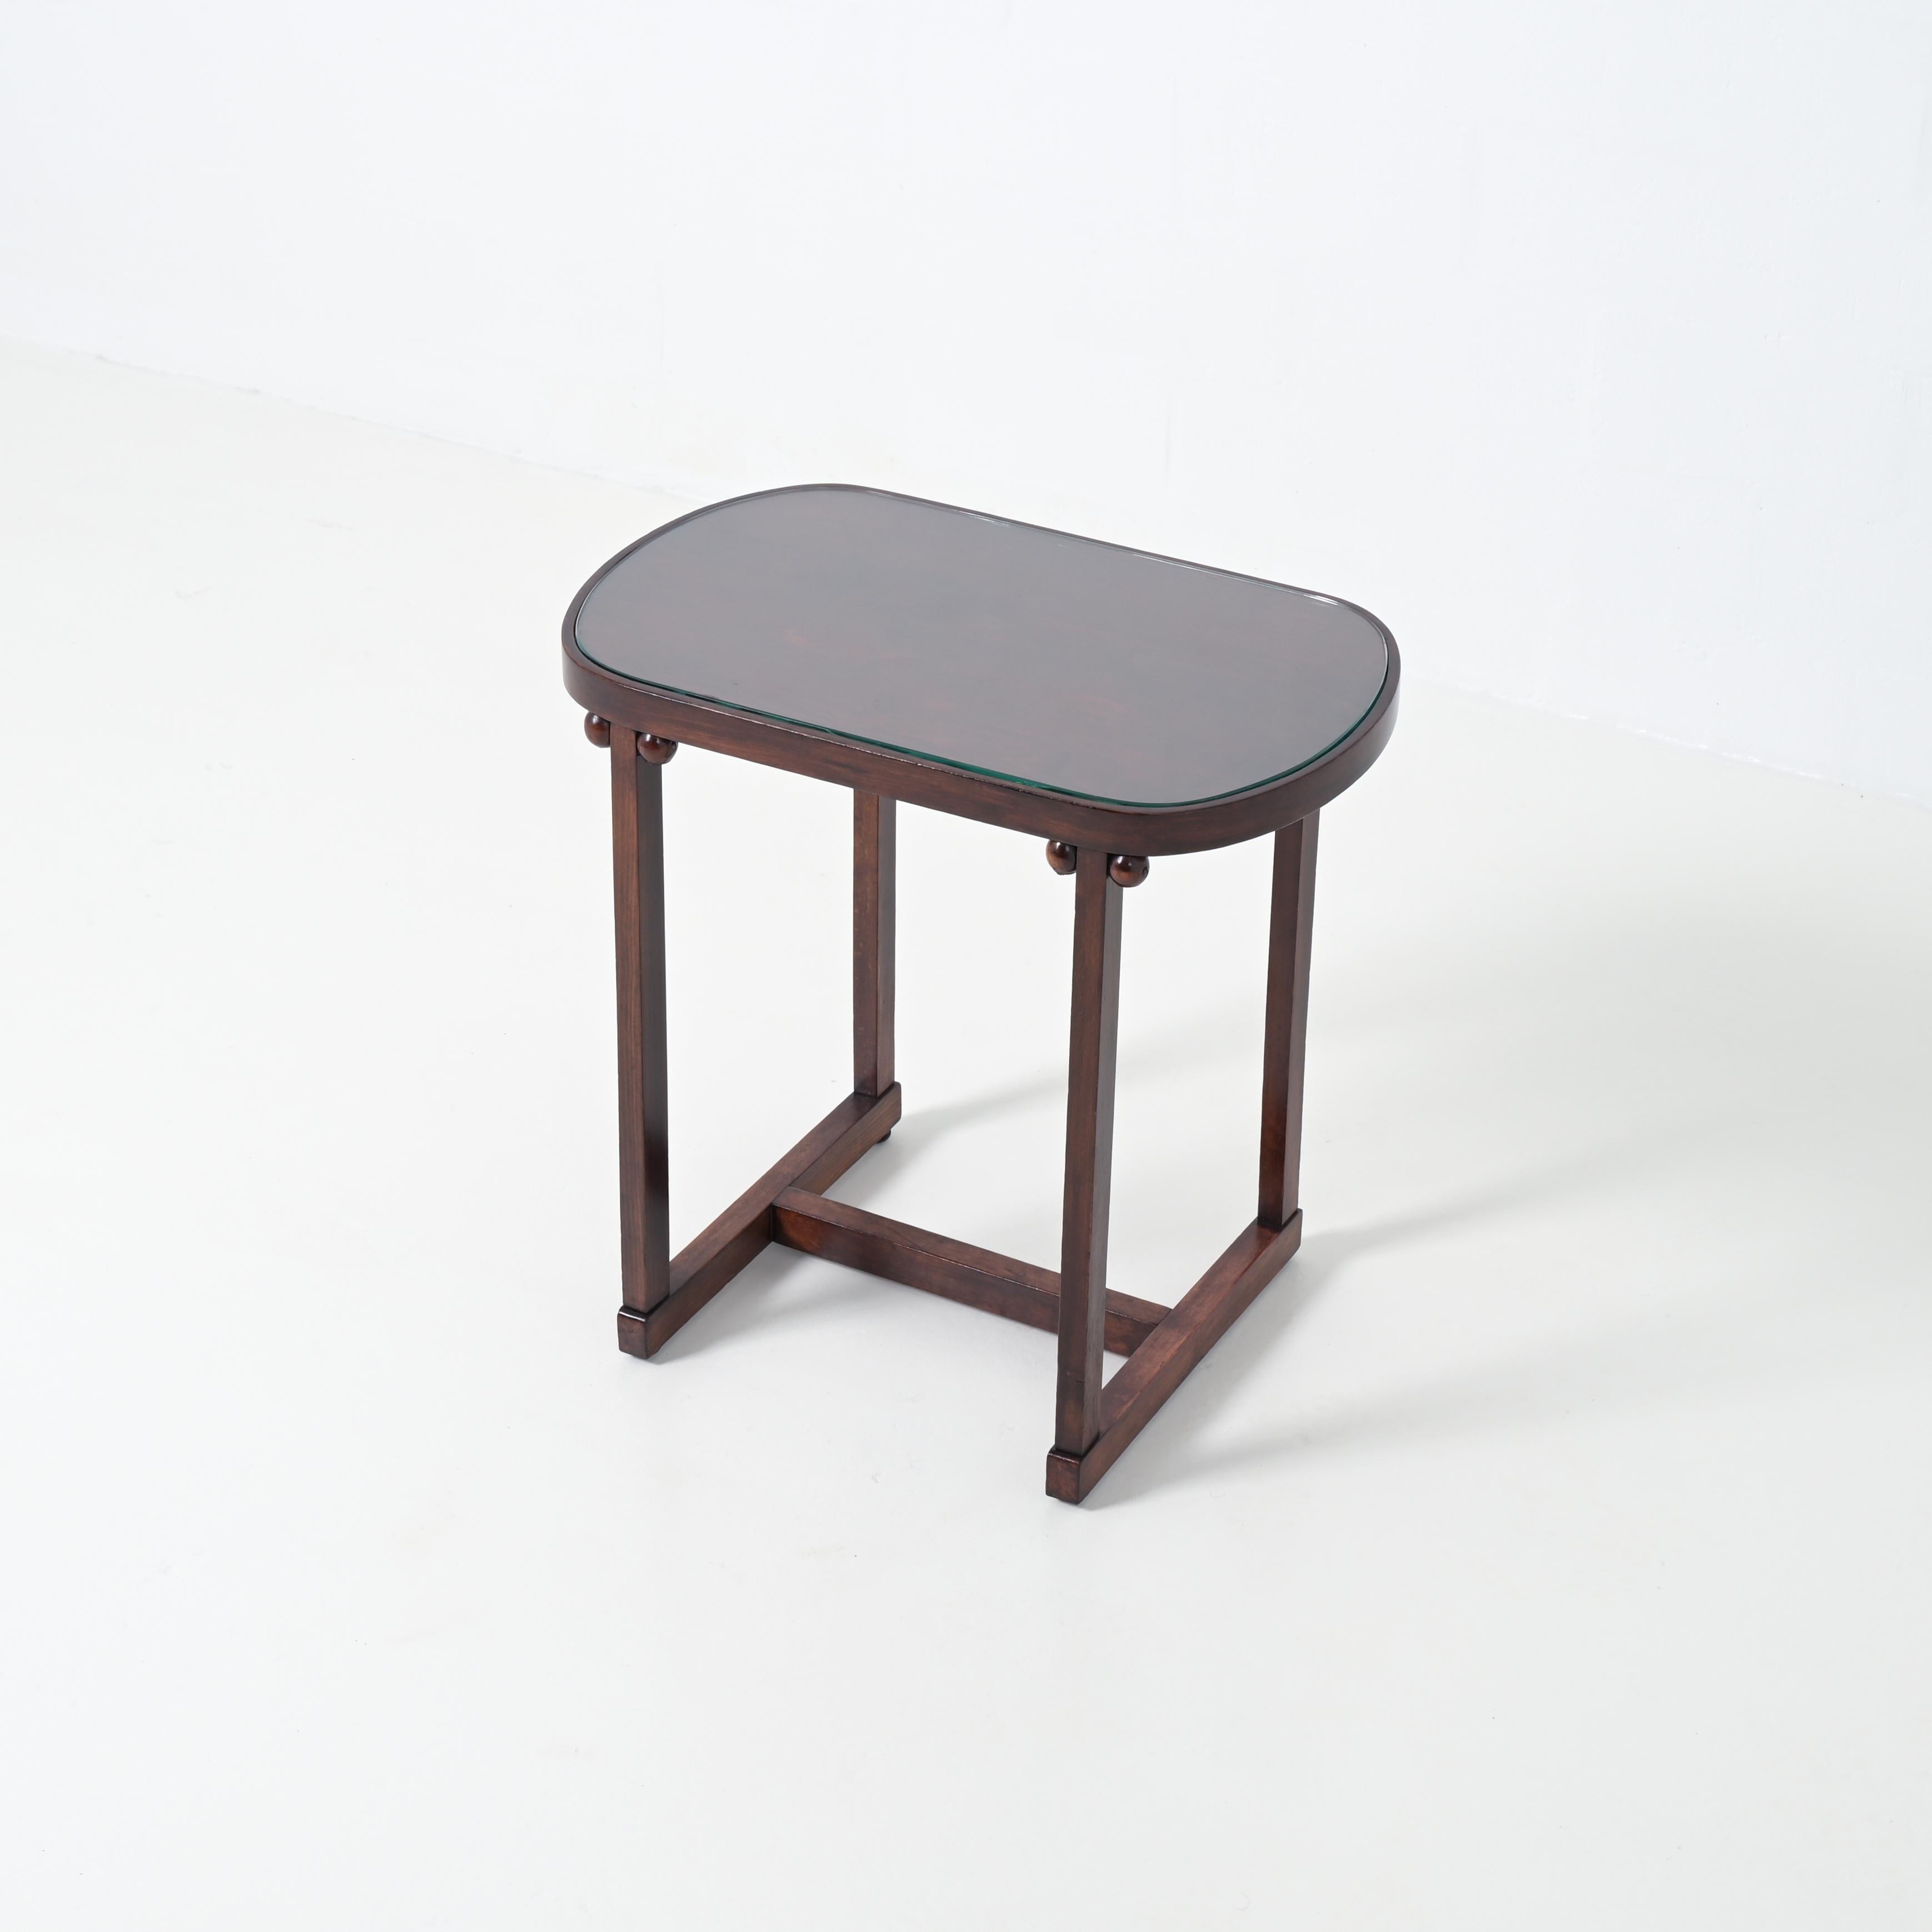 Dieser kleine Tisch von J. & J. Kohn ist ein Entwurf von Josef Hoffmann. Sie können ihn als kleinen Schreibtisch oder als Frisiertisch verwenden. Der Tisch ist komplett aus Holz und hat eine Glasplatte, er ist in perfektem Zustand und beschriftet.
